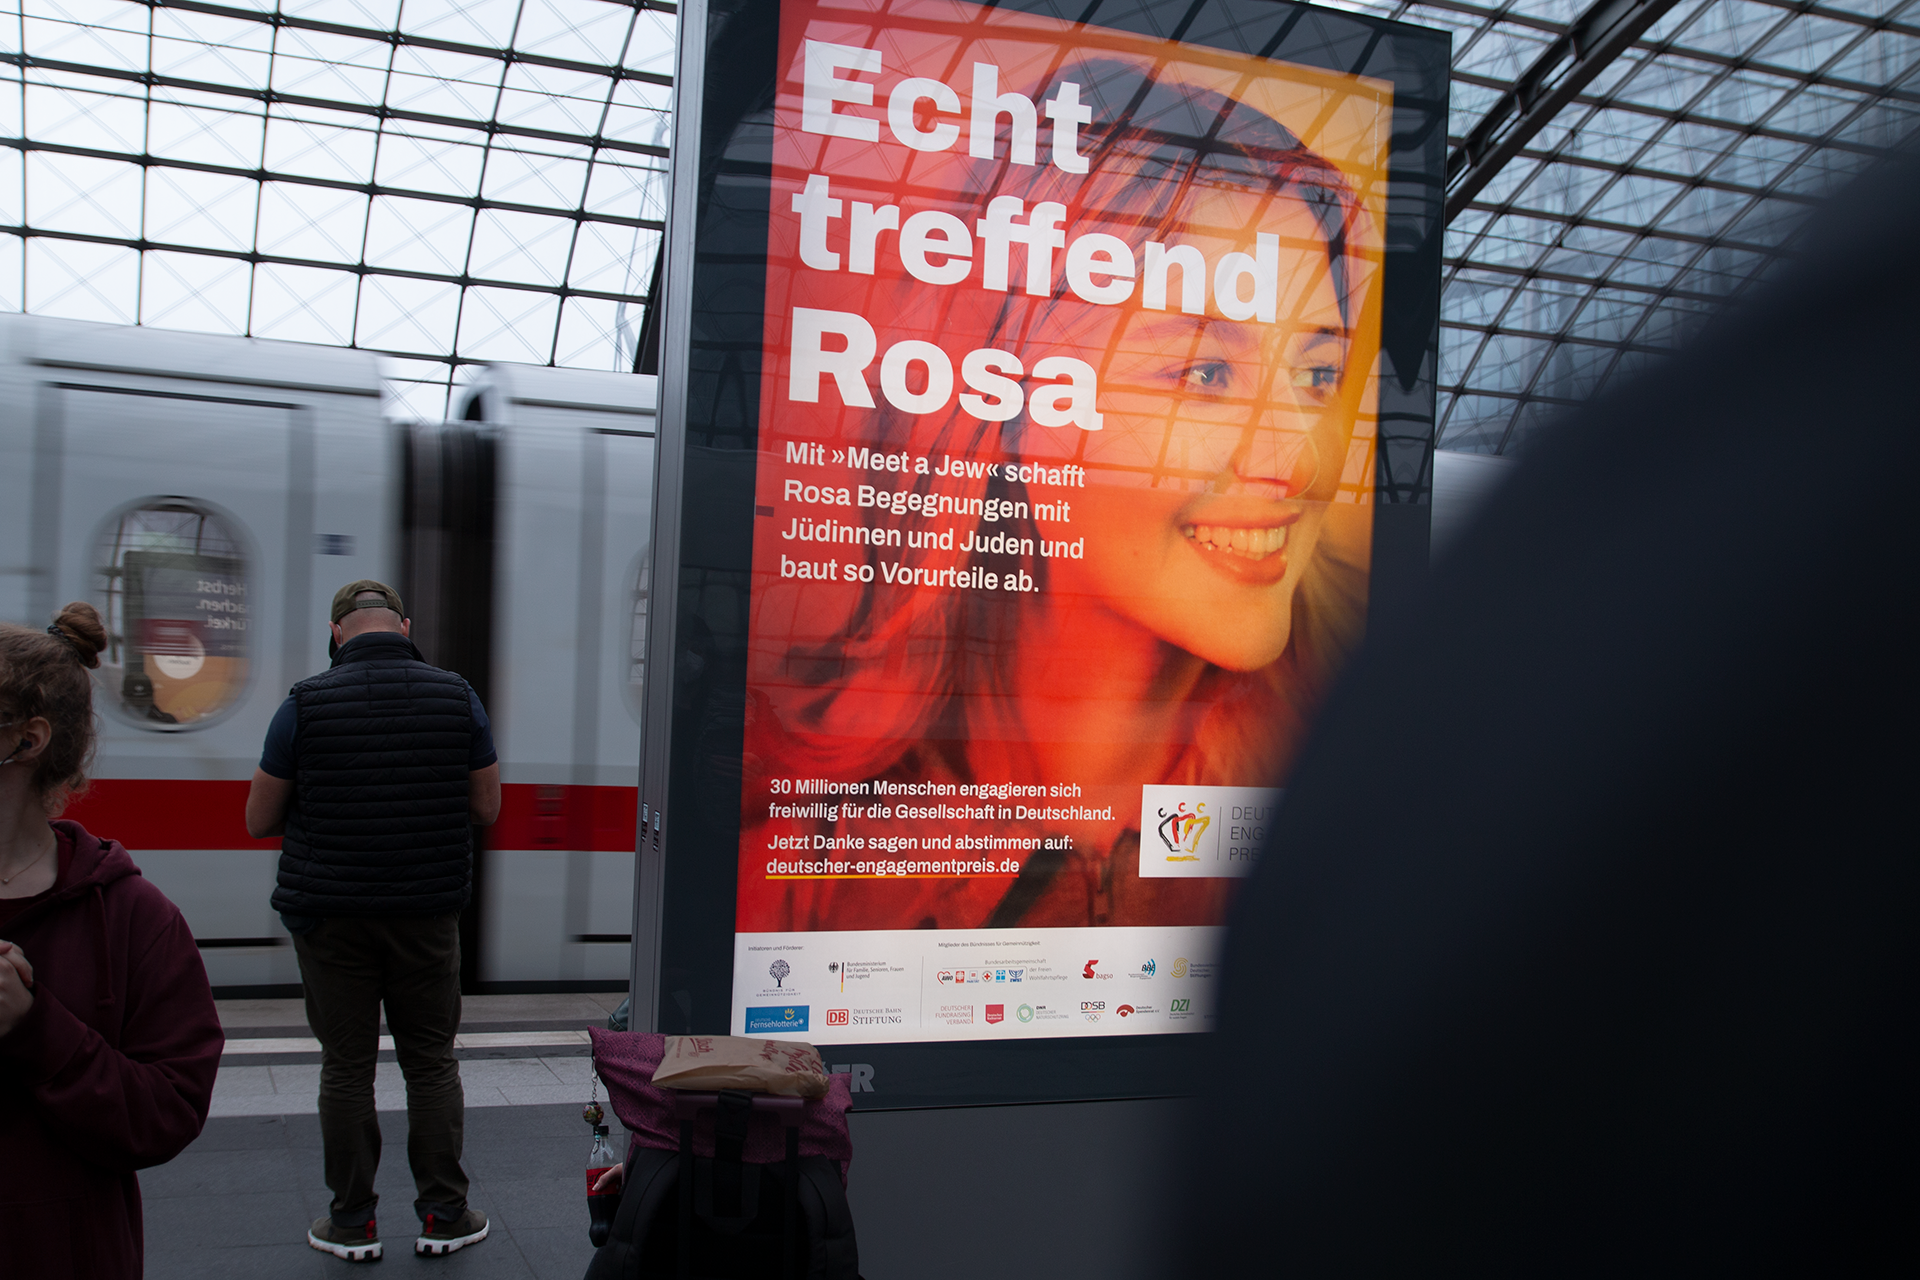 Echt Stark, Deutscher Engagementpreis Kampagnen Plakat mit blonder Frau und Slogan `Echt treffend Rosa`